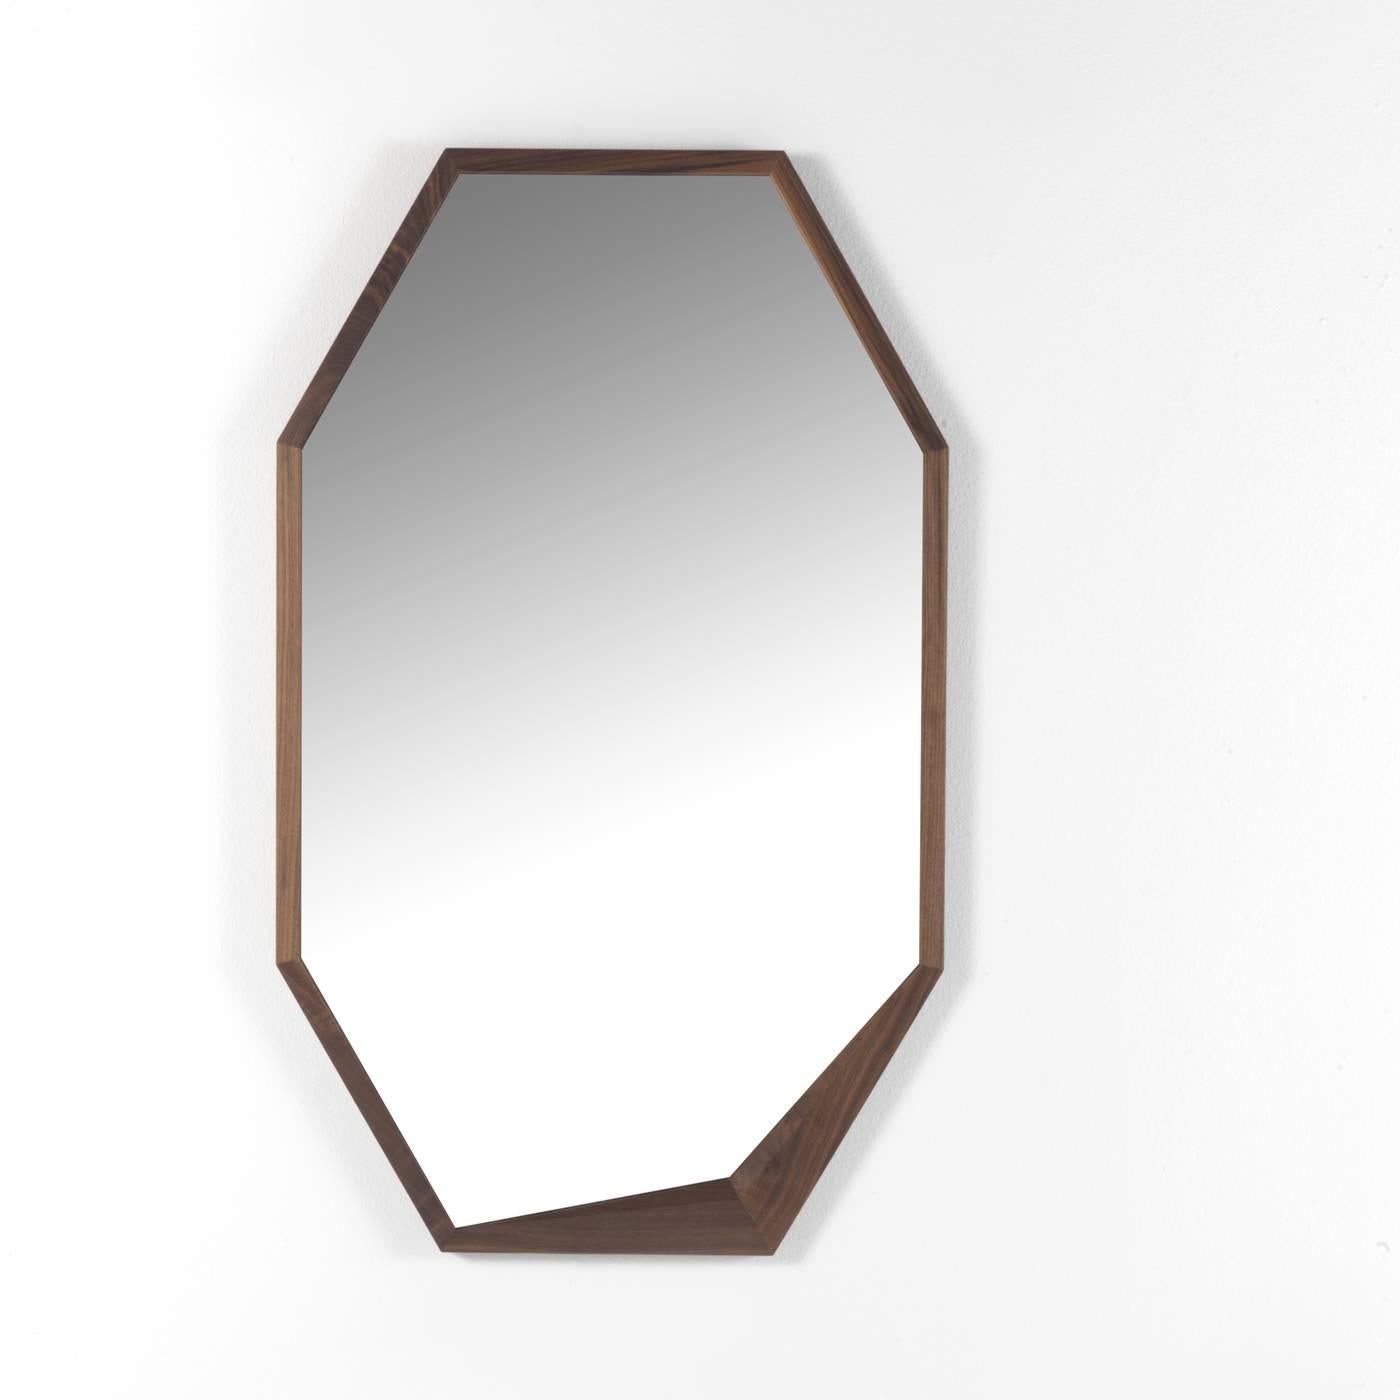 Ce miroir sophistiqué présente une silhouette minimaliste élégante et intemporelle. Son cadre est en noyer Canaletto massif et un charmant détail irrégulier orne l'un des coins de sa forme hexagonale allongée. S'adaptant à tous les décors, ce miroir